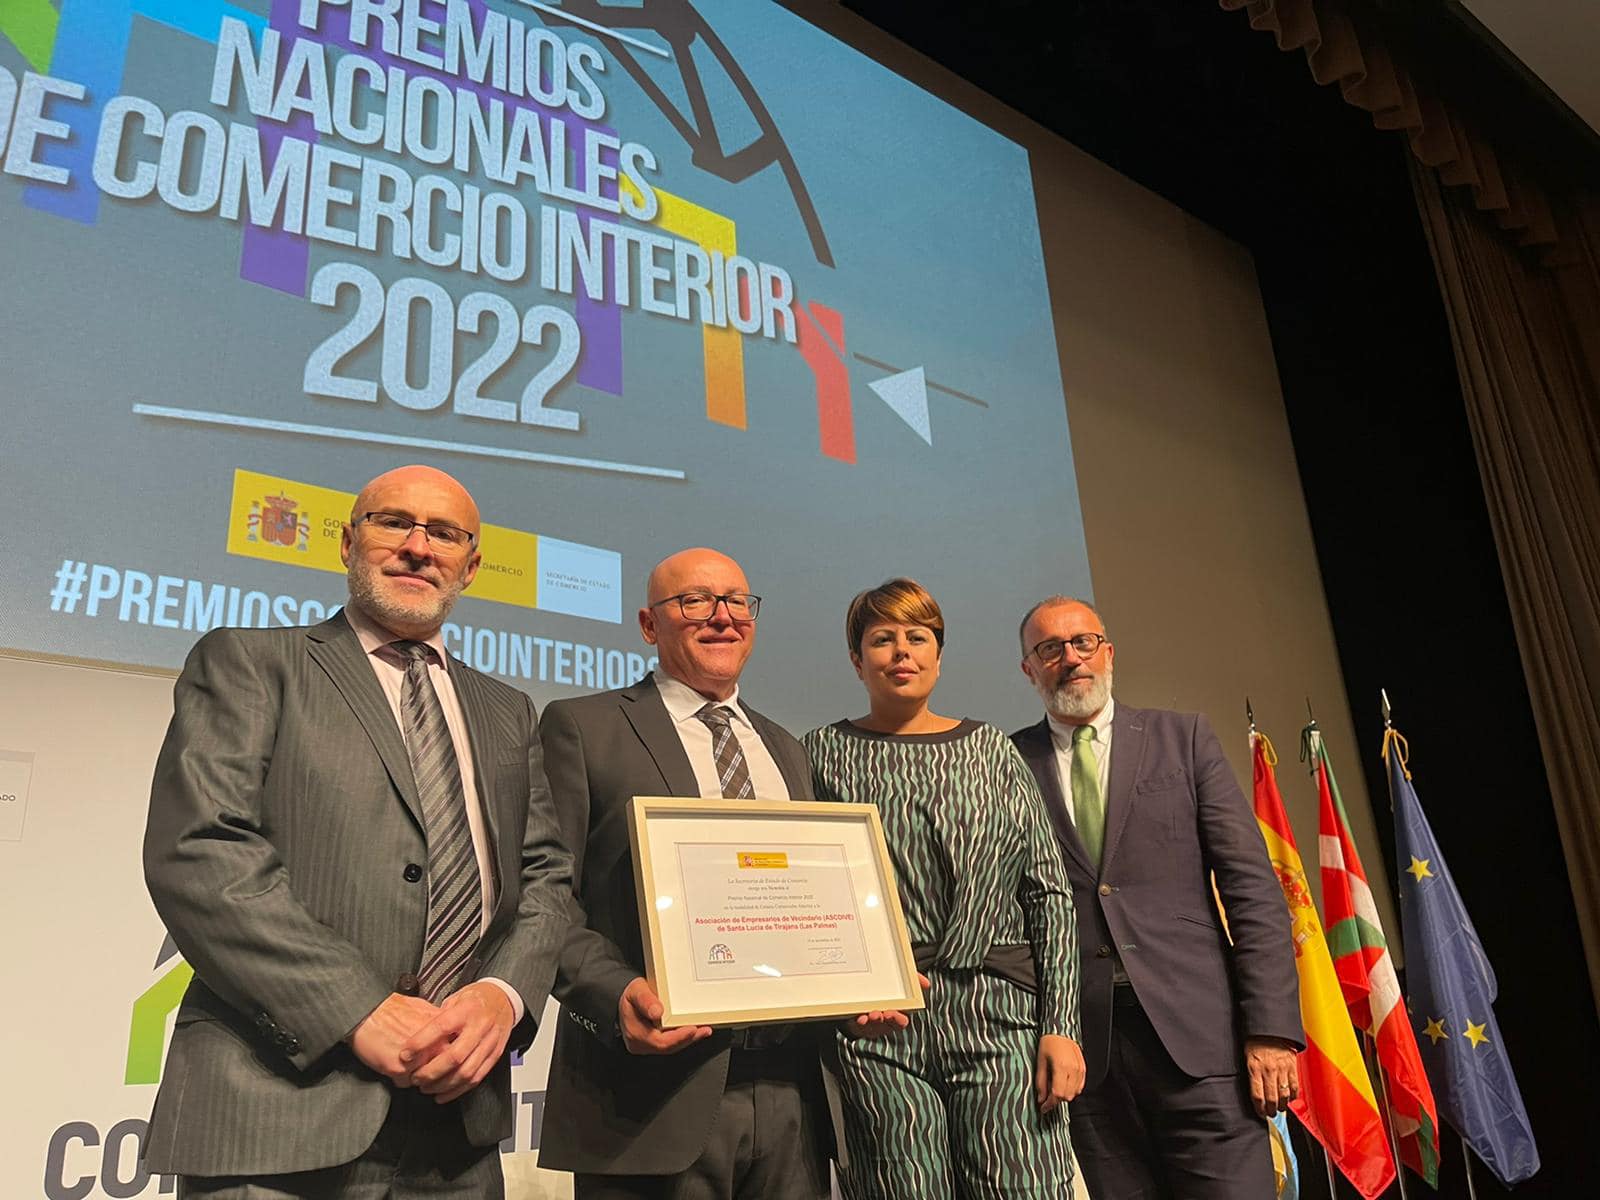 El Cabildo acompaña a Ascoive en la entrega de una Mención honorífica en los Premios Nacionales de Comercio Interior